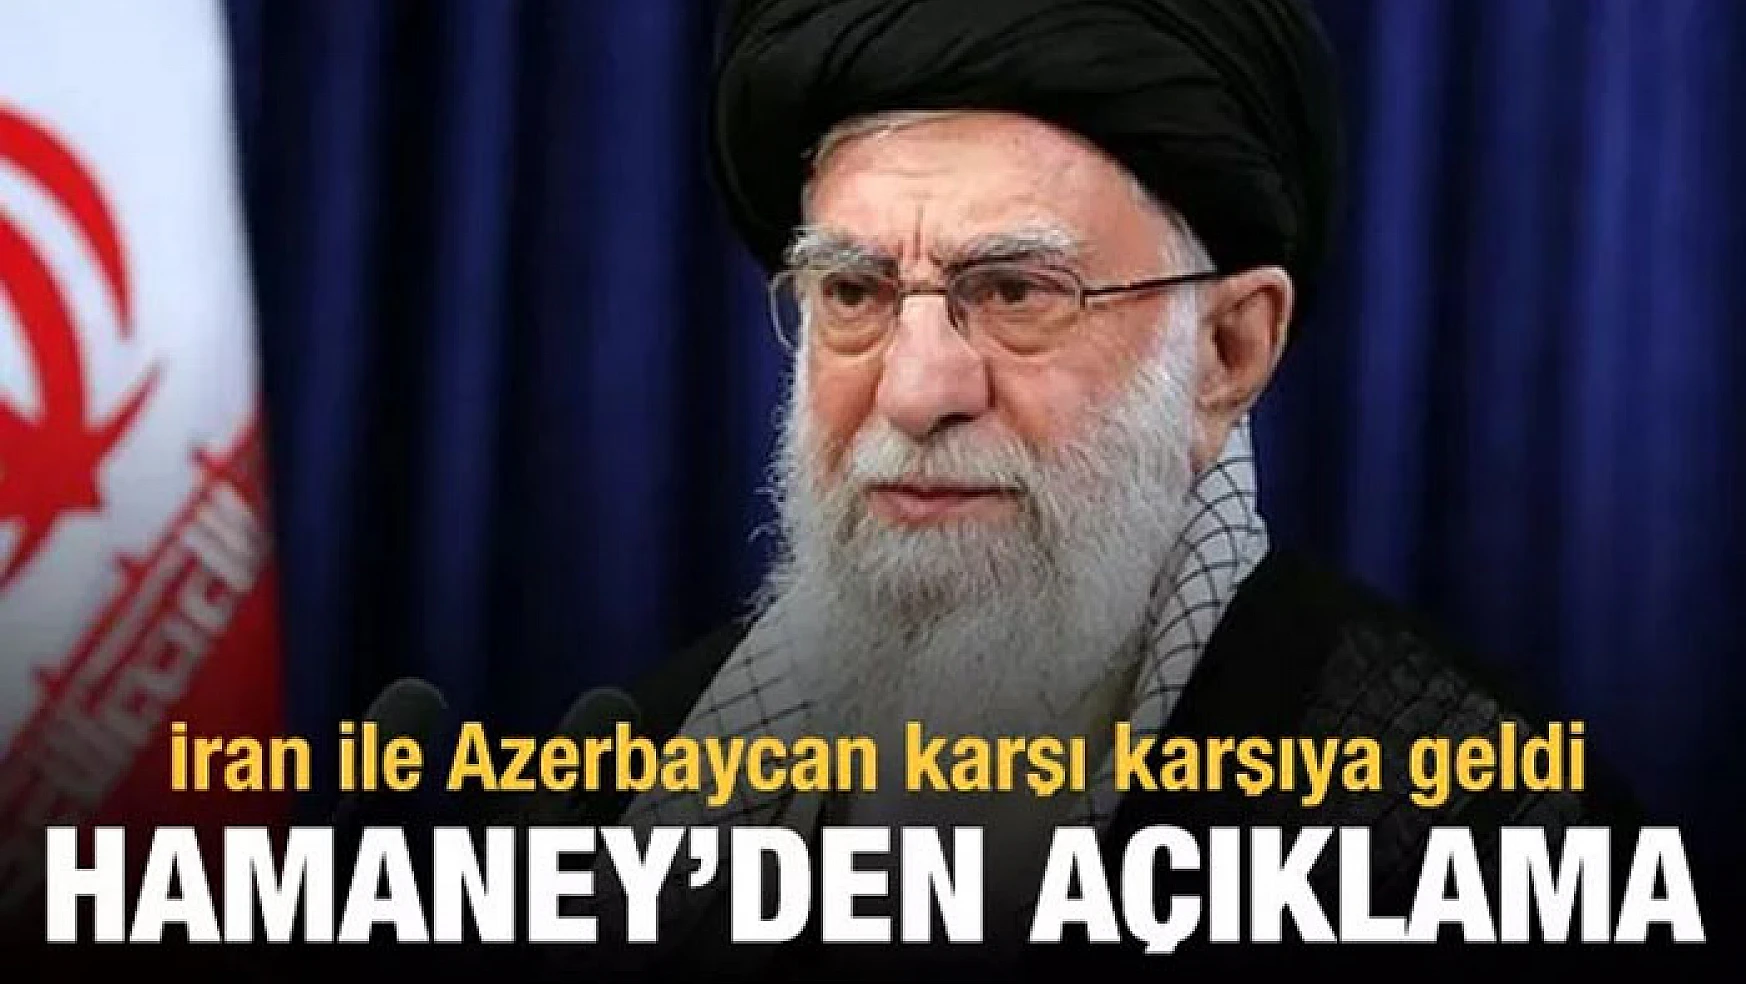 İran ile Azerbaycan karşı karşıya geldi! Hamaney'den açıklama